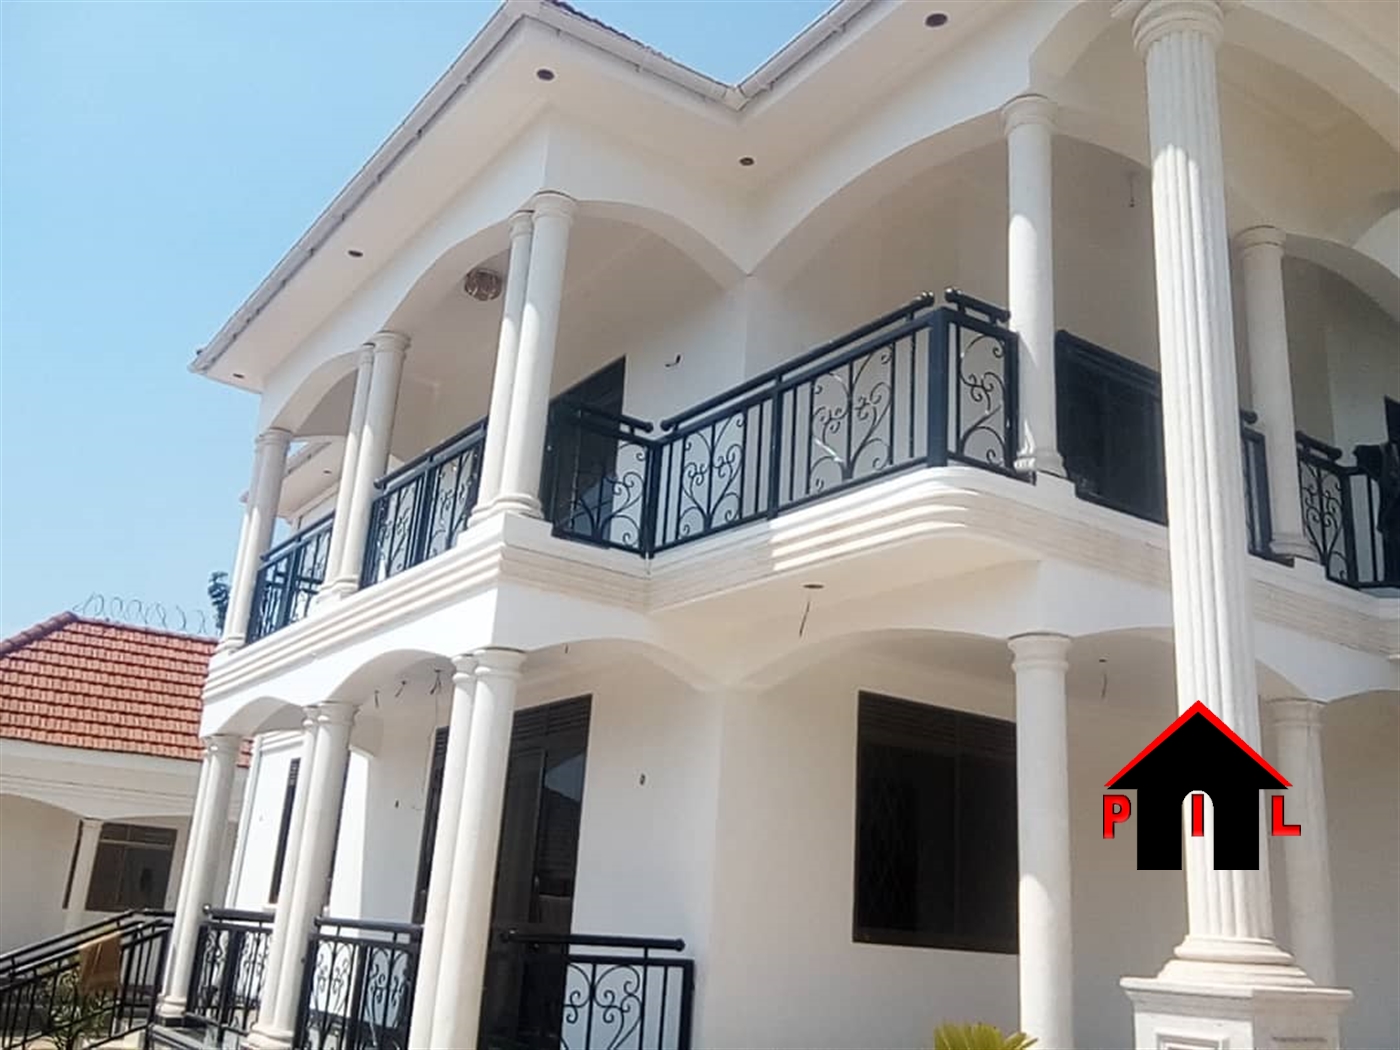 Mansion for sale in Mukono Mukono